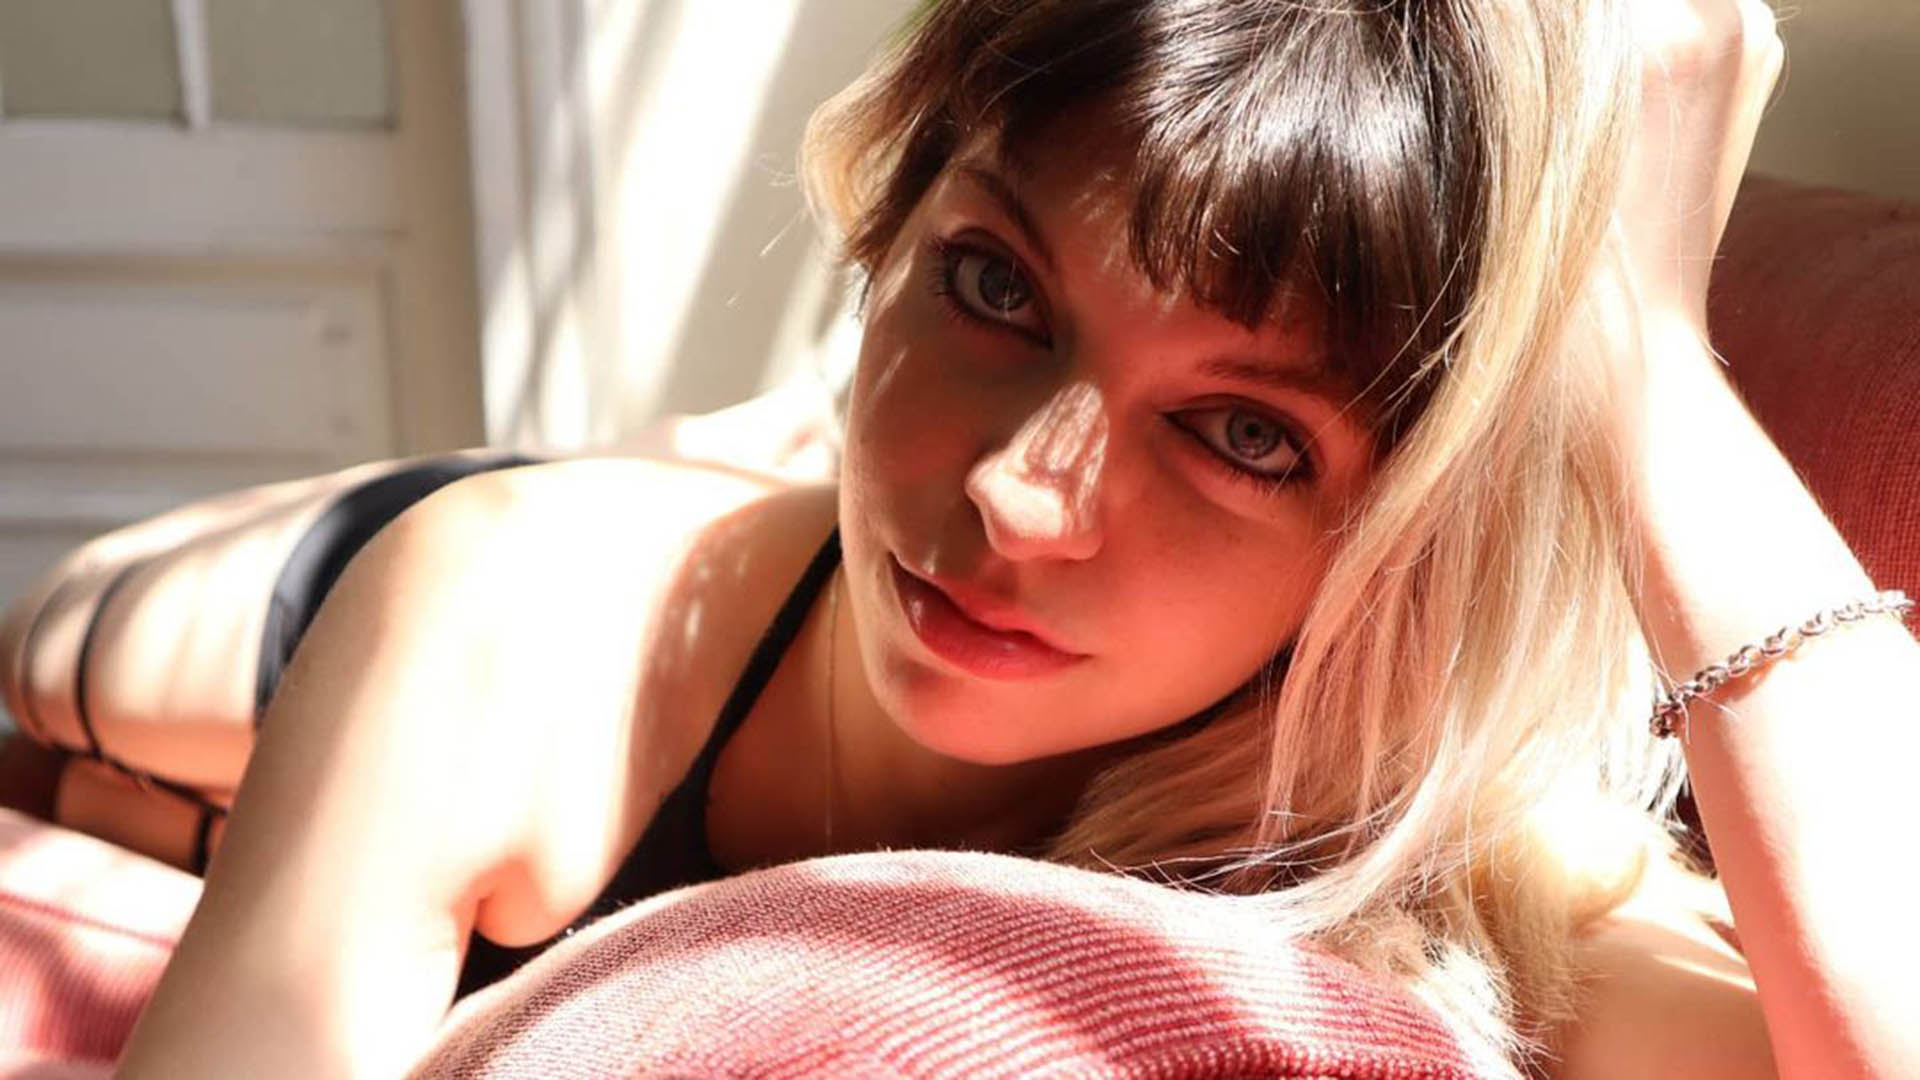 Es argentina y la llaman “la youtuber del porno” mientras se graba teniendo sexo, hace tutoriales foto imagen